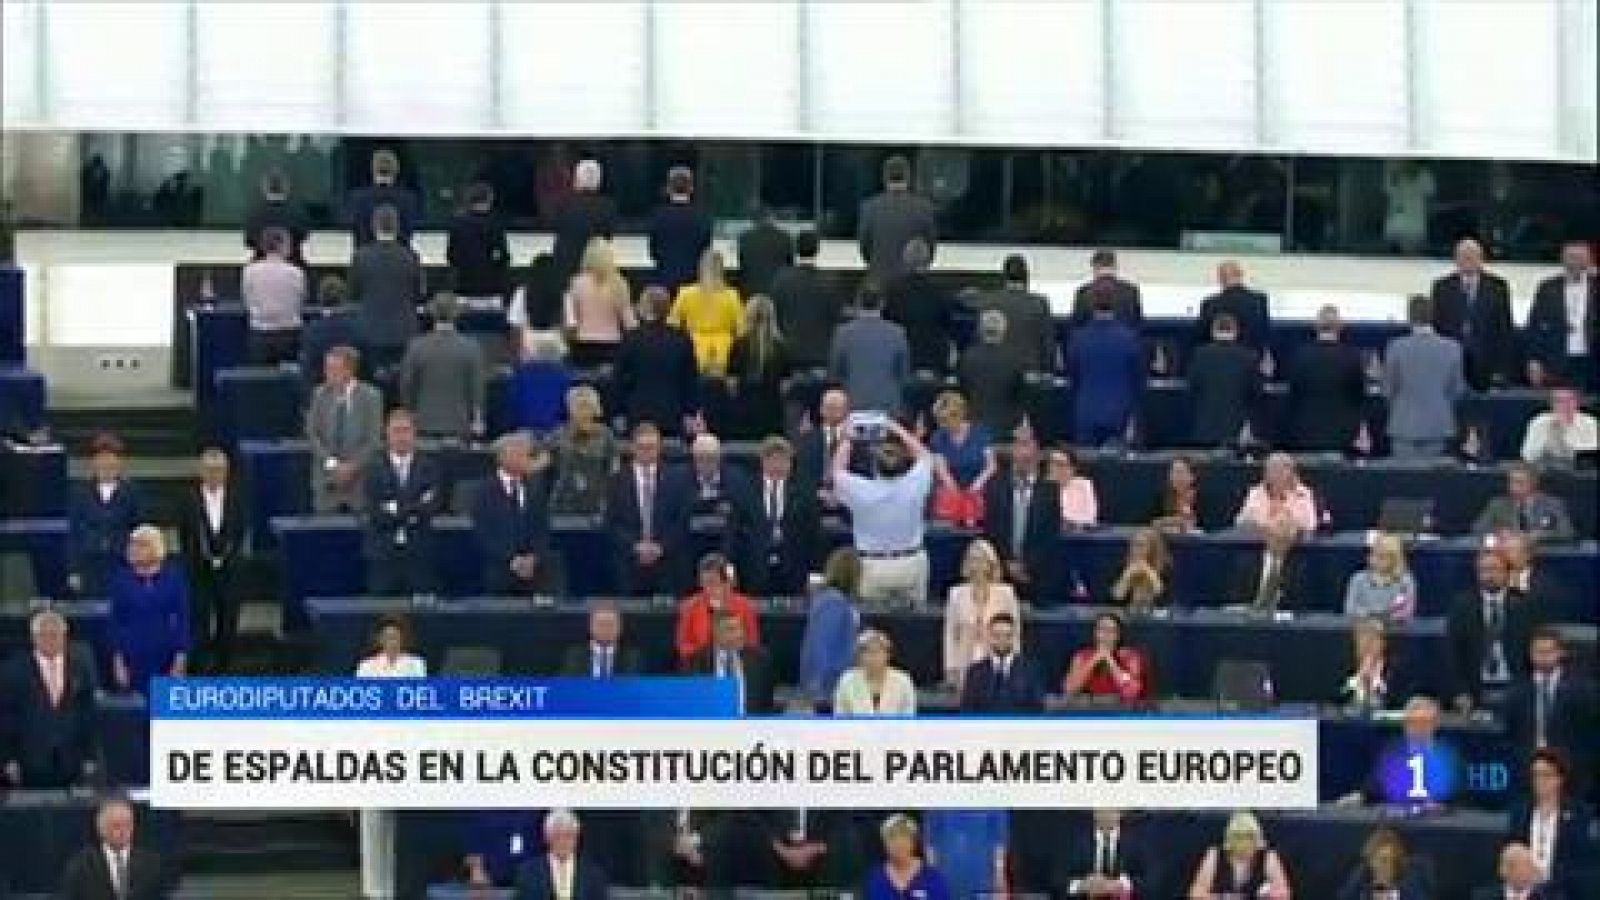 Los eurodiputados del Partido del Brexit dan la espalda al himno europeo en la constitución del Parlamento